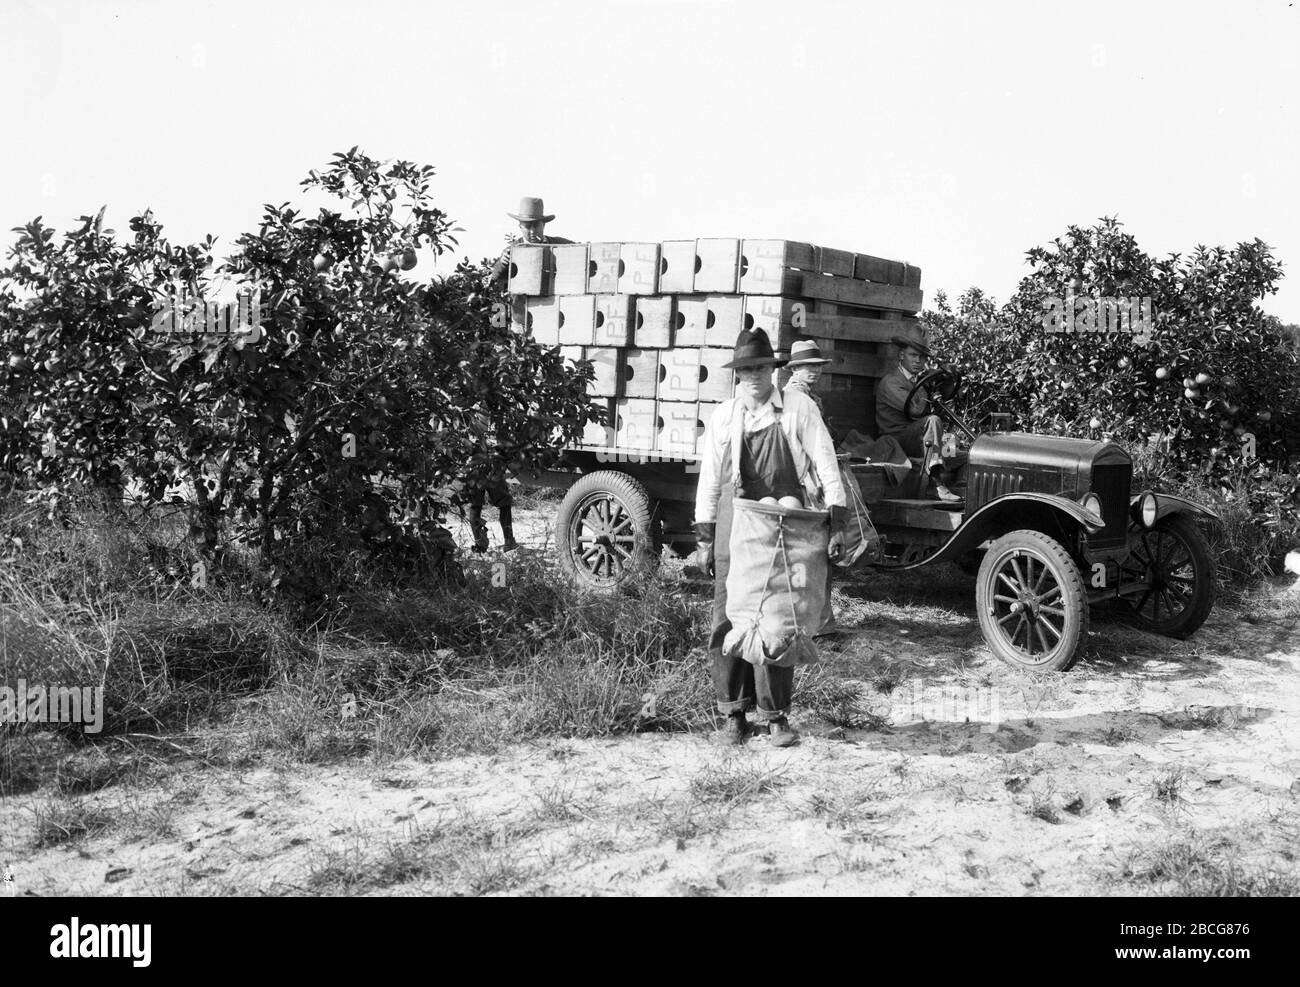 Ein männlicher Obstpflücker trägt eine Kommissioniertasche voller Grapefruit, während andere Männer Kisten auf einen LKW in einem Grapefruithain, Florida, 1920er Jahre, laden. (Foto von Burton Holmes) Stockfoto